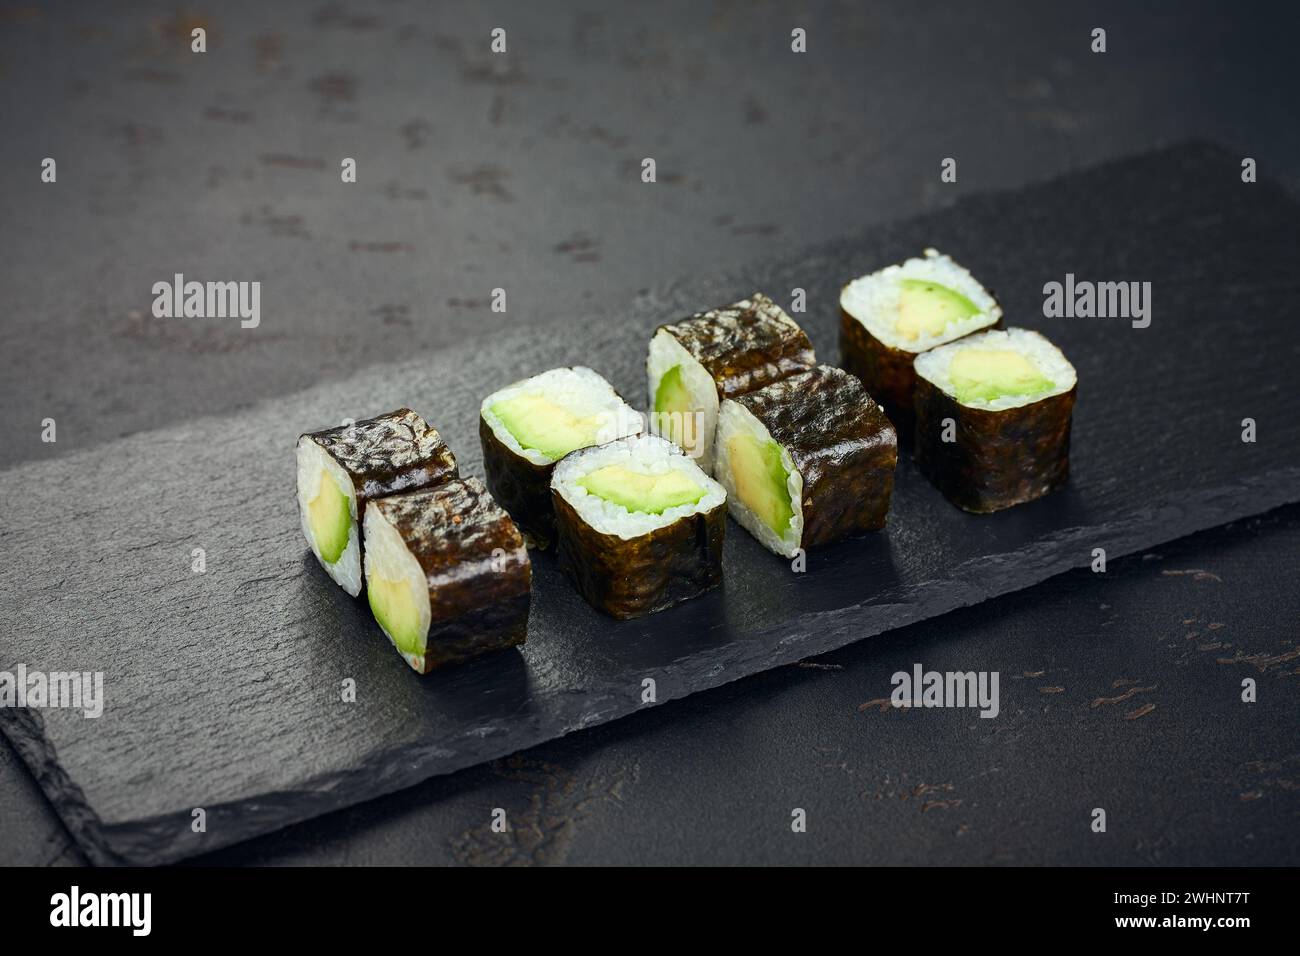 Rolle mit Avocado auf dunklem Hintergrund. Sushi-Menü. Japanisches Essen. Stockfoto